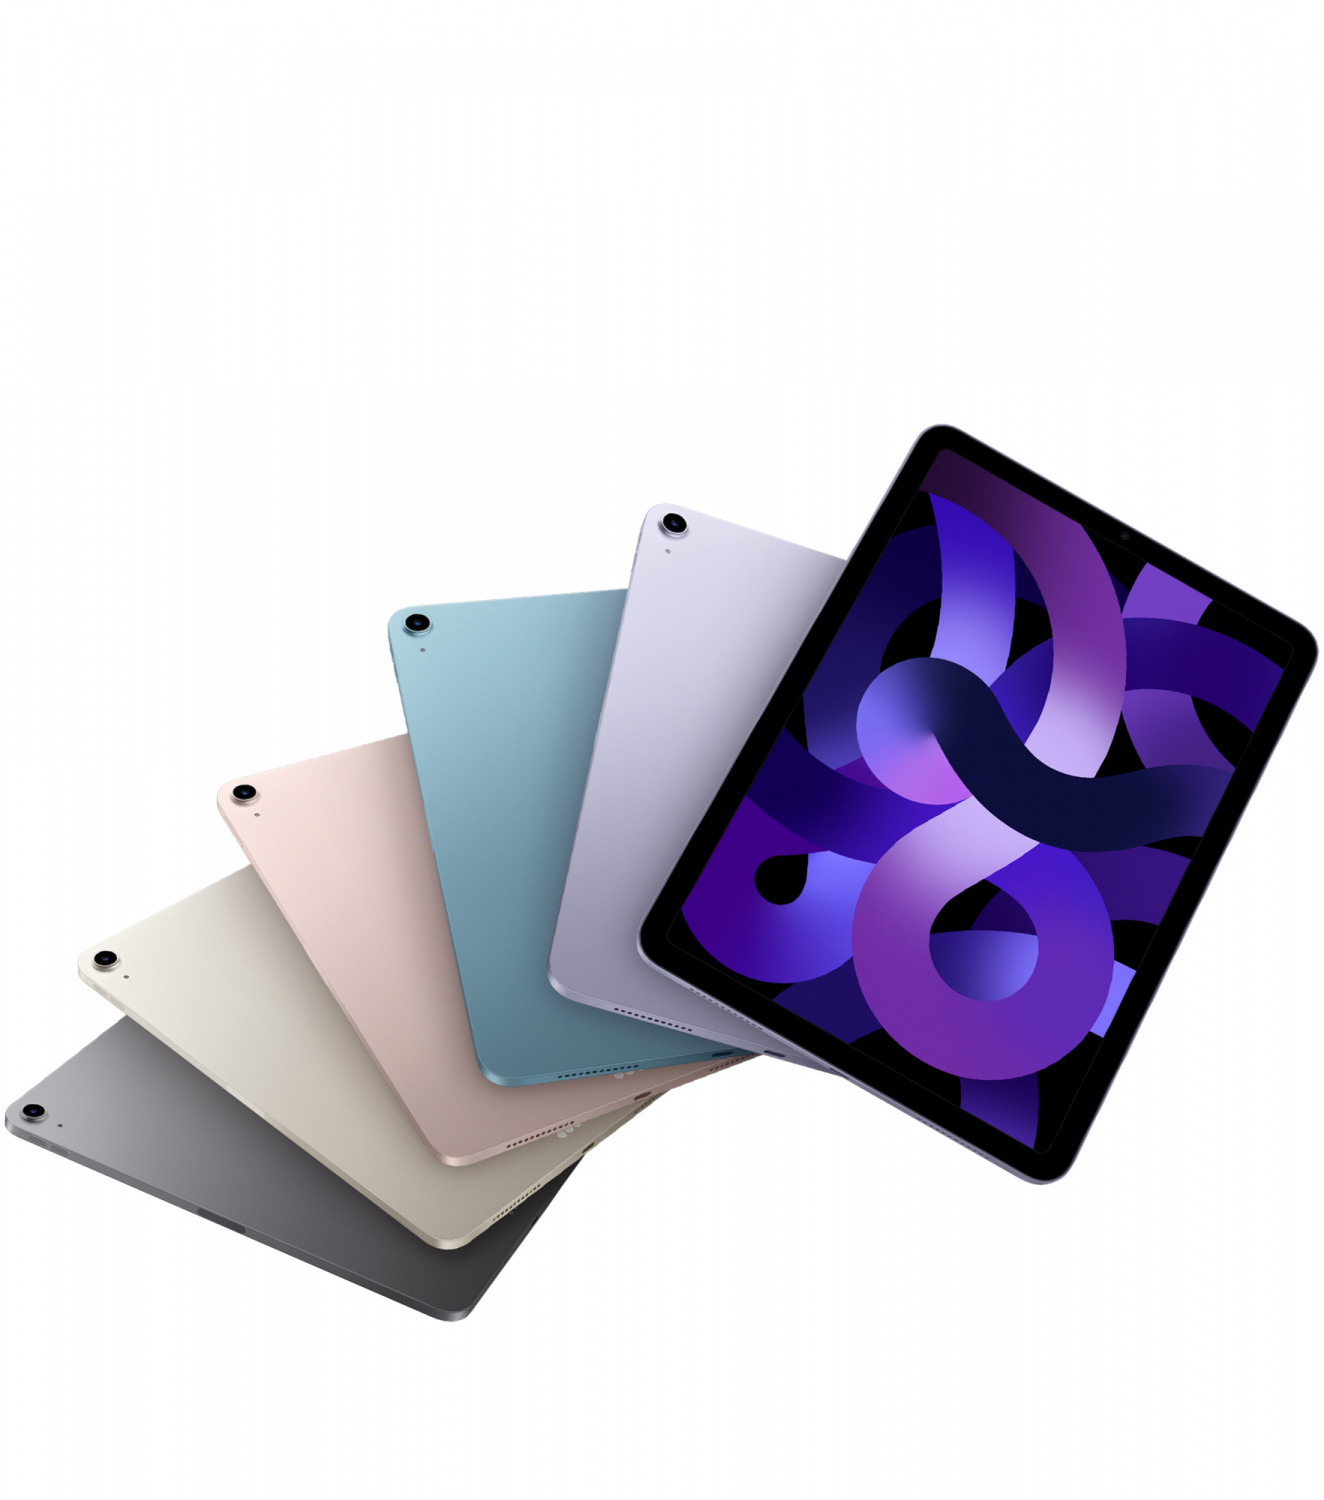 Купить планшет apple ipad air 5 поколение m1 2022 wi-fi + cellular 64 гб, pink Apple iPad Air в официальном магазине Apple, Samsung, Xiaomi. iPixel.ru Купить, заказ, кредит, рассрочка, отзывы,  характеристики, цена,  фотографии, в подарок.